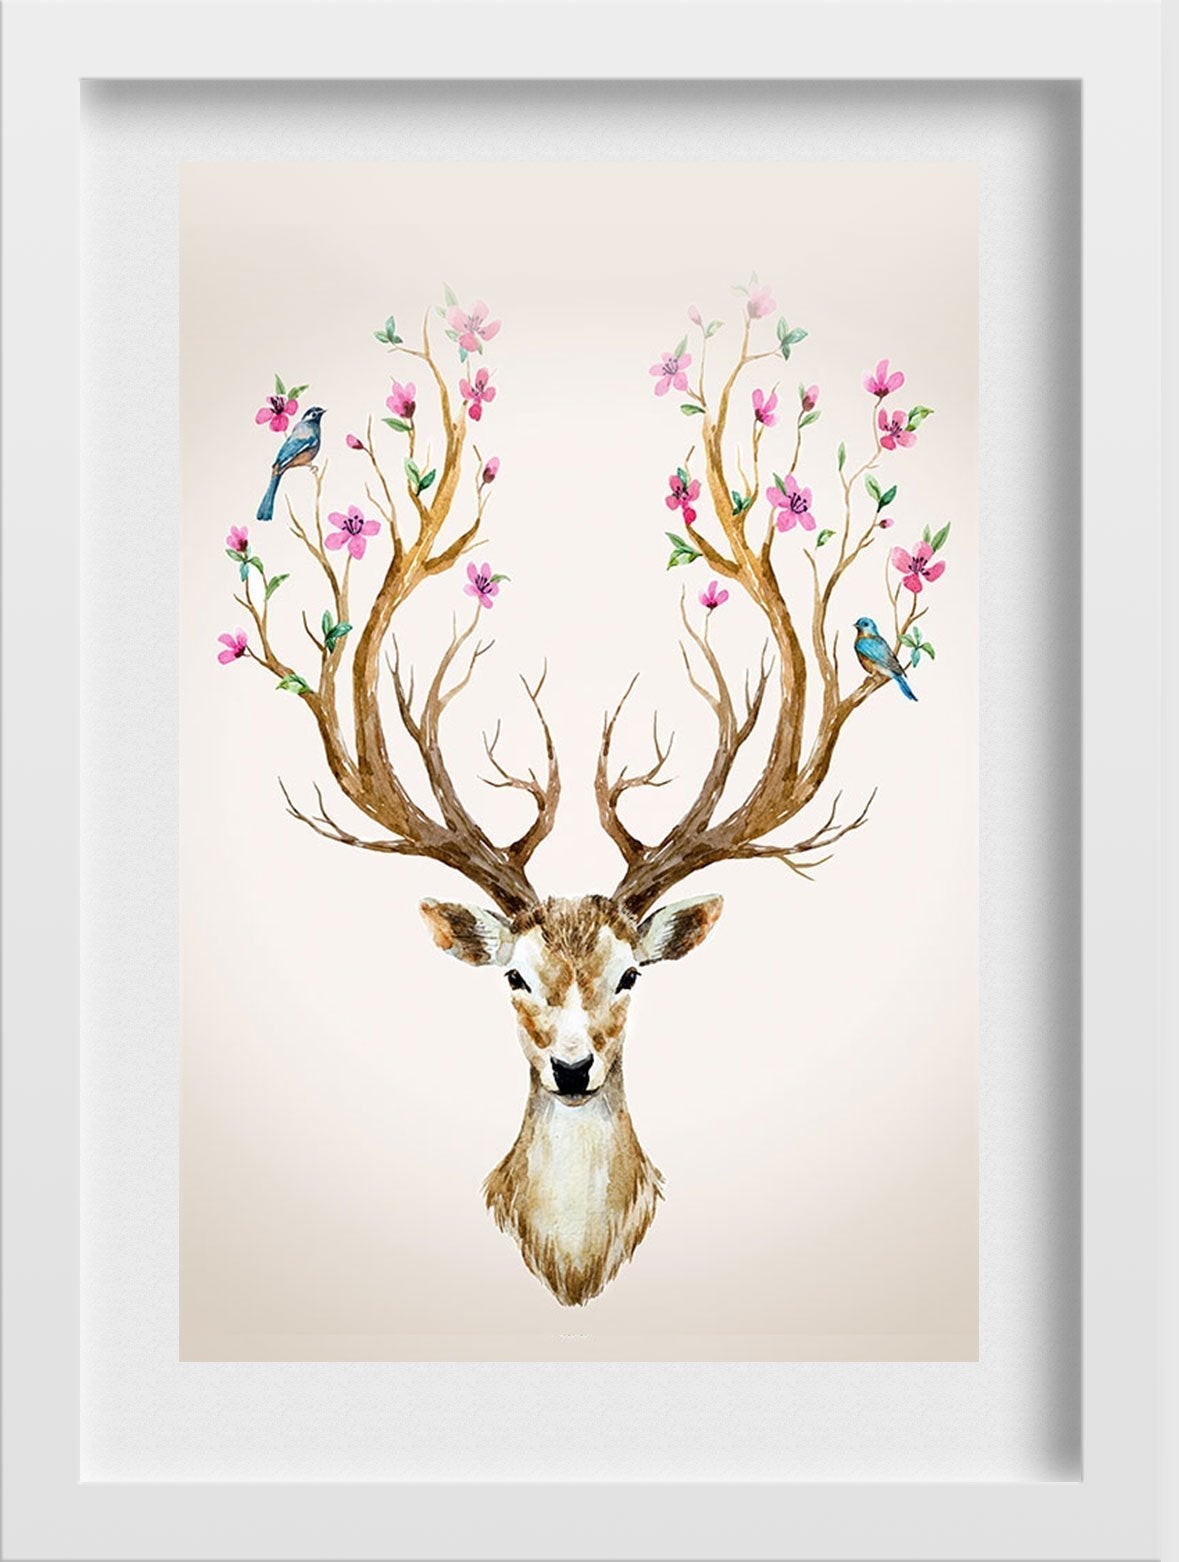 Deer With Flowers 2 Painting - Meri Deewar - MeriDeewar